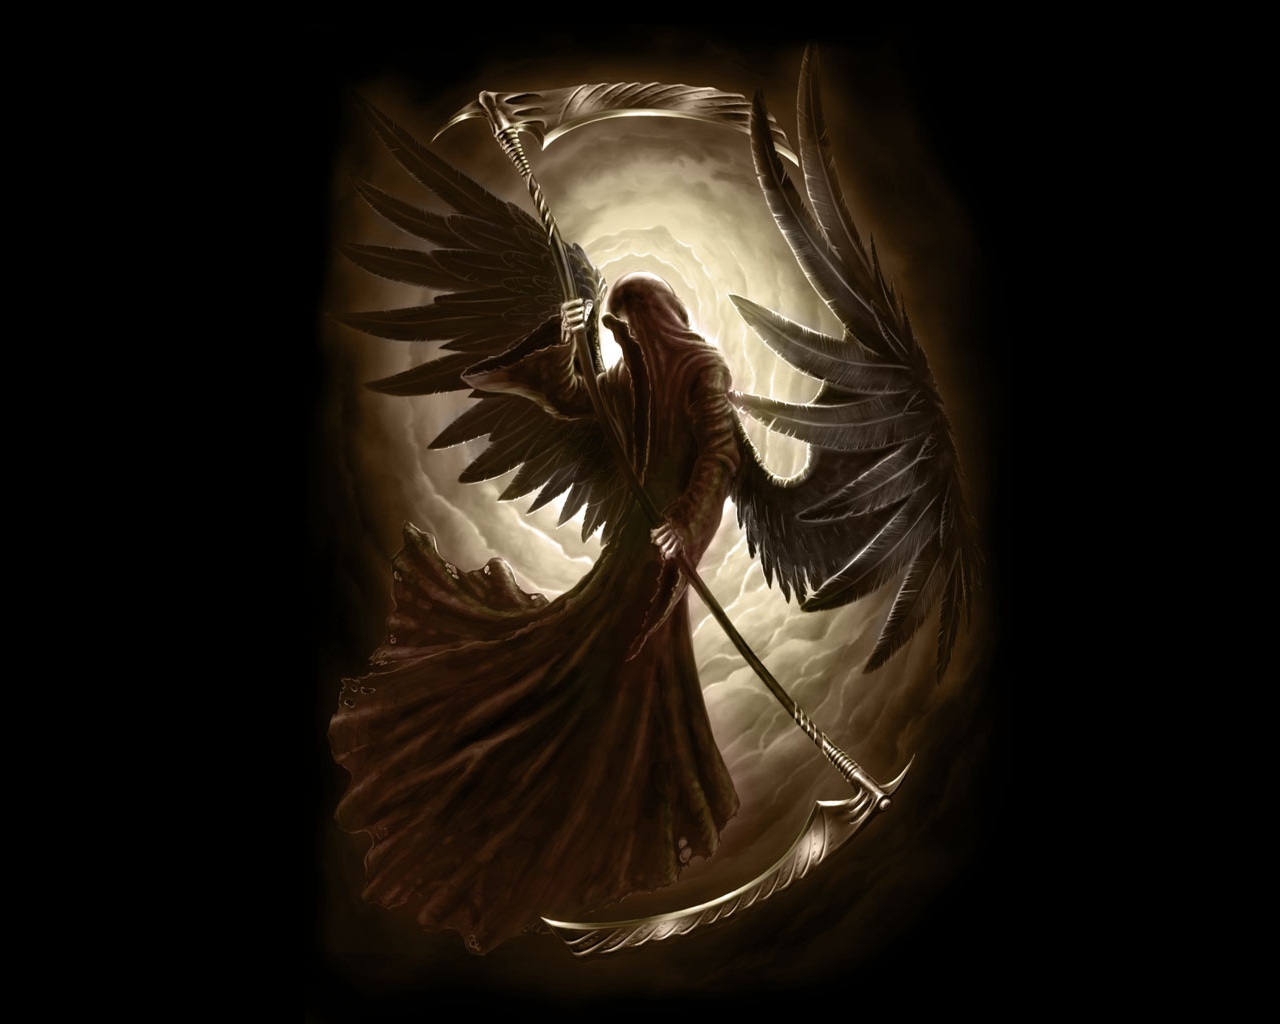 Download mobile wallpaper Dark, Grim Reaper for free.